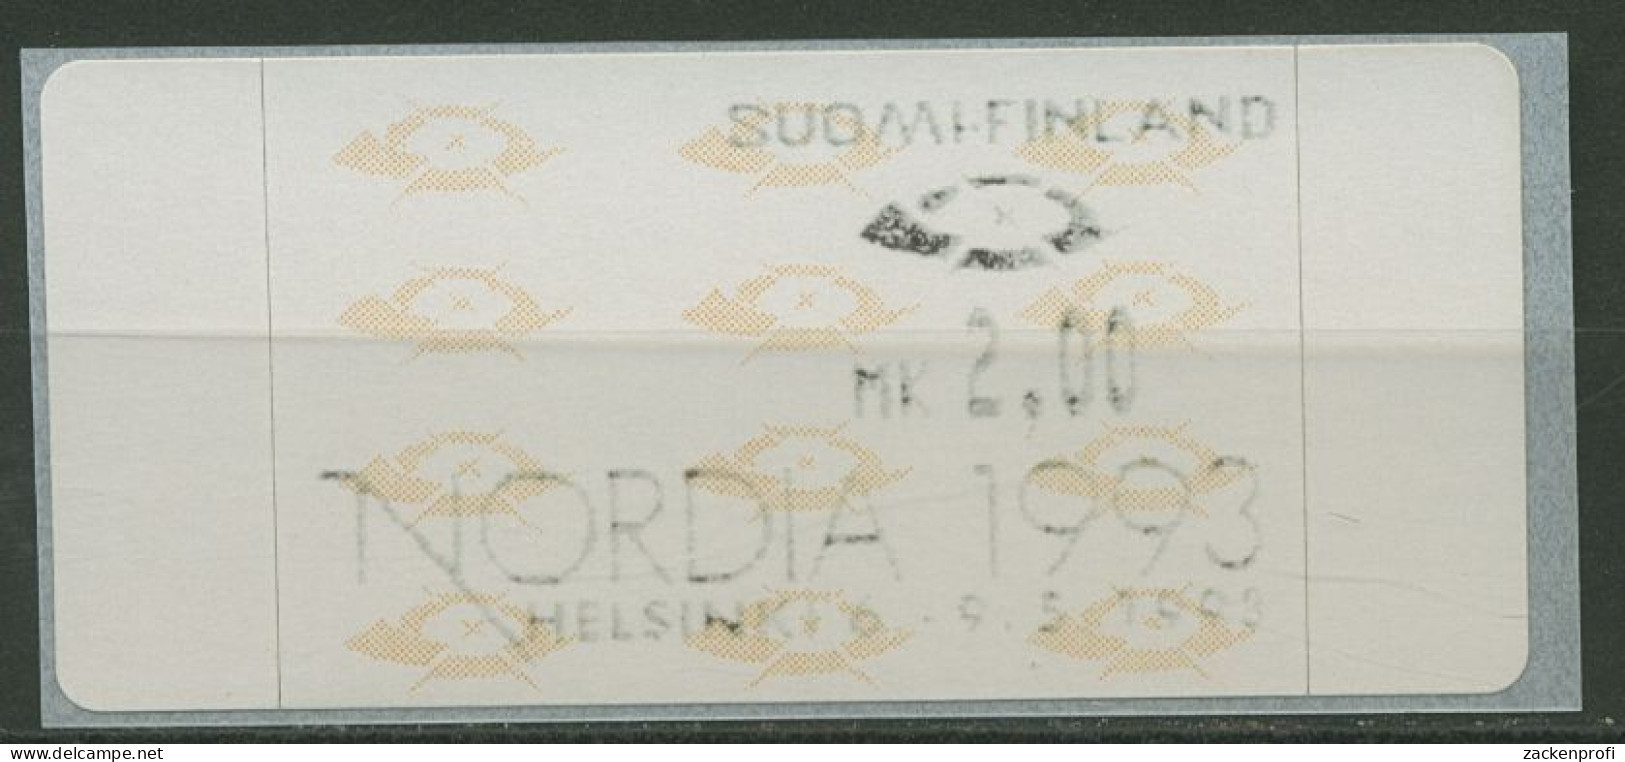 Finnland ATM 1993 Posthörner Einzelwert ATM 12.5 Z1 Postfrisch - Vignette [ATM]